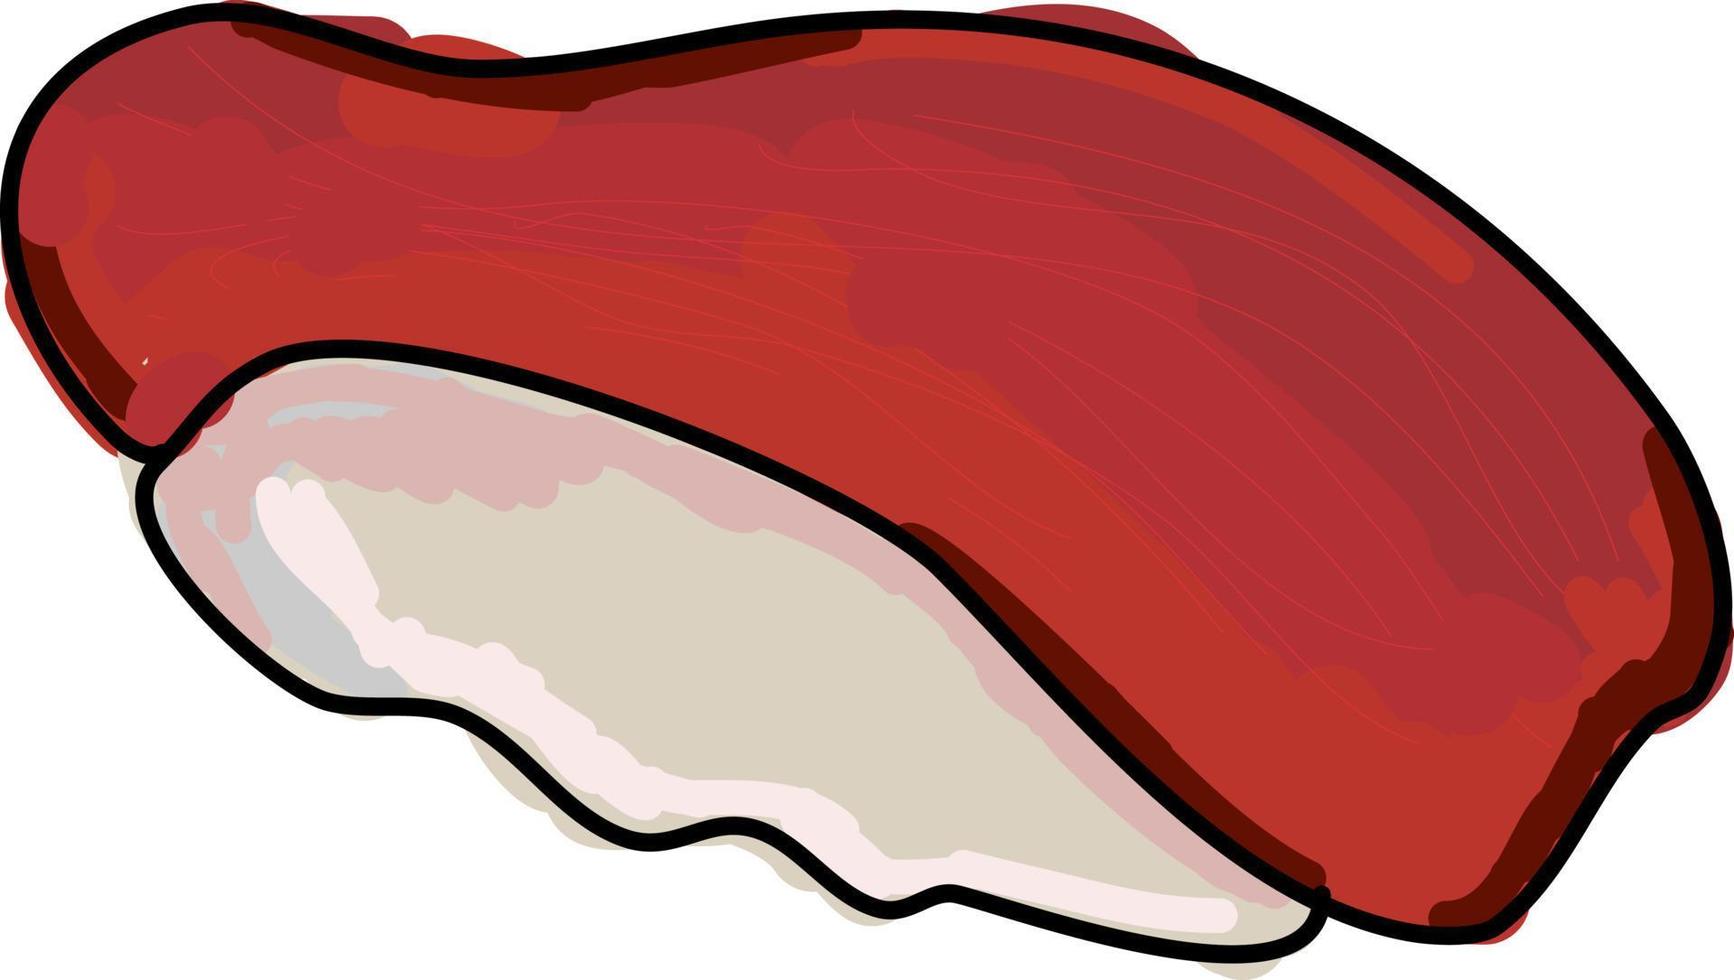 tonfisk fisk, illustration, vektor på vit bakgrund.